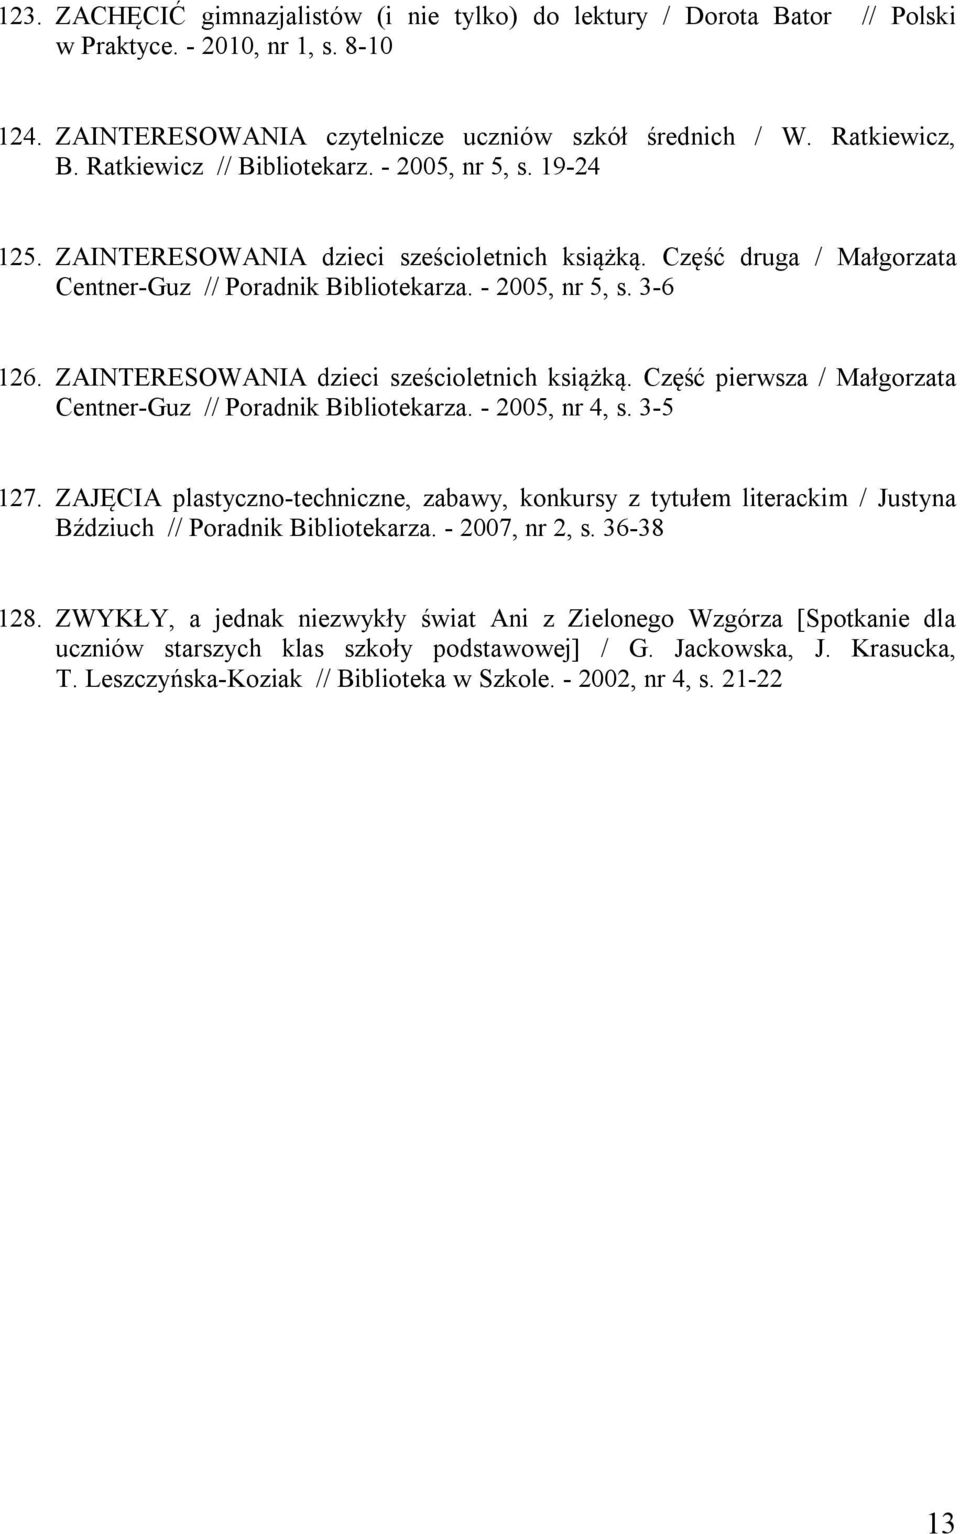 ZAINTERESOWANIA dzieci sześcioletnich książką. Część pierwsza / Małgorzata Centner-Guz // Poradnik Bibliotekarza. - 2005, nr 4, s. 3-5 127.